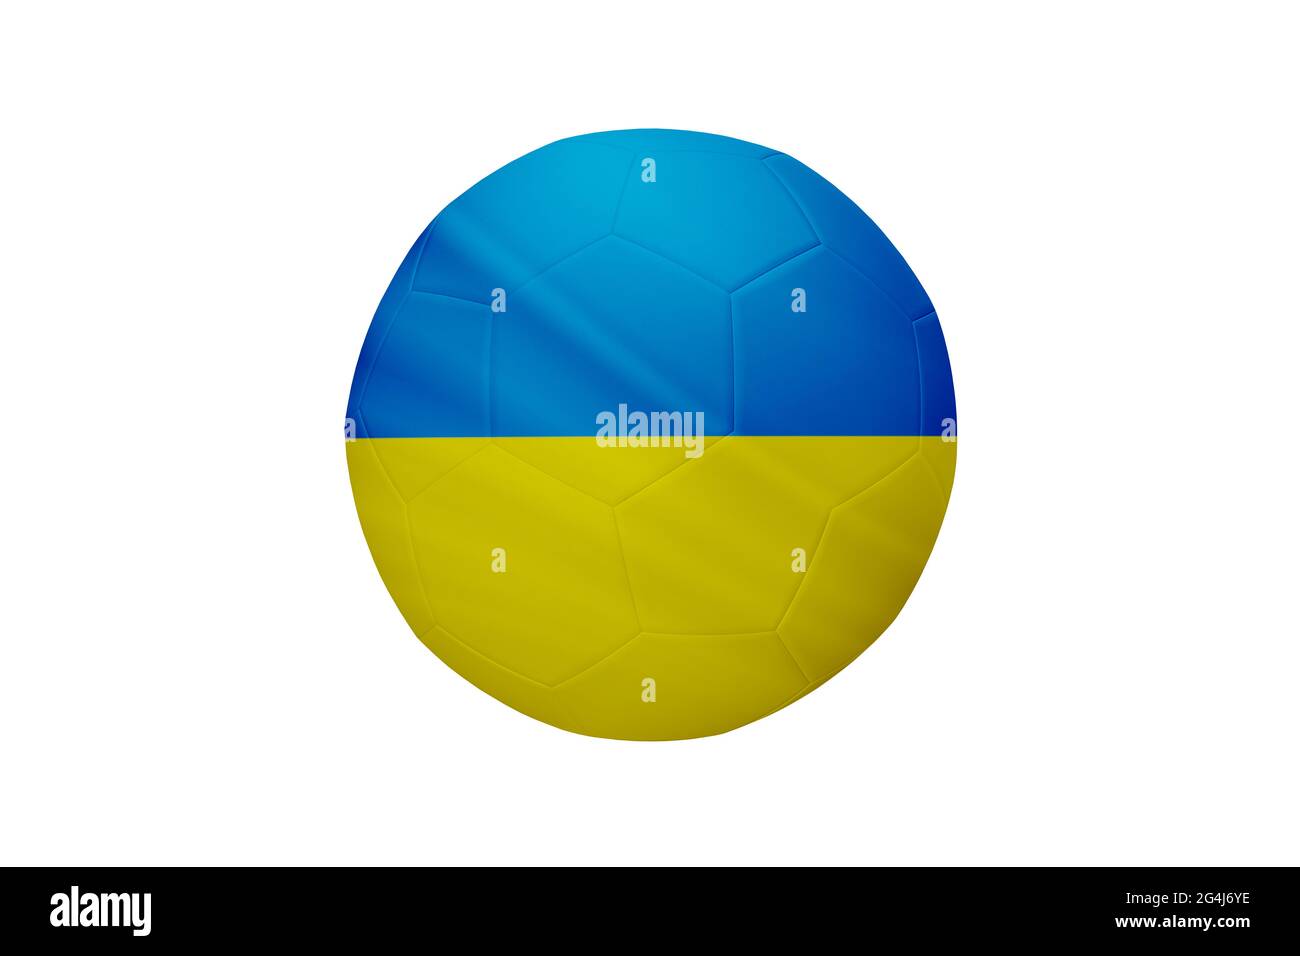 Fußball in den Farben der Ukraine-Flagge isoliert auf weißem Hintergrund. In einem konzeptionellen Meisterschaftsbild, das die Ukraine unterstützt. Stockfoto